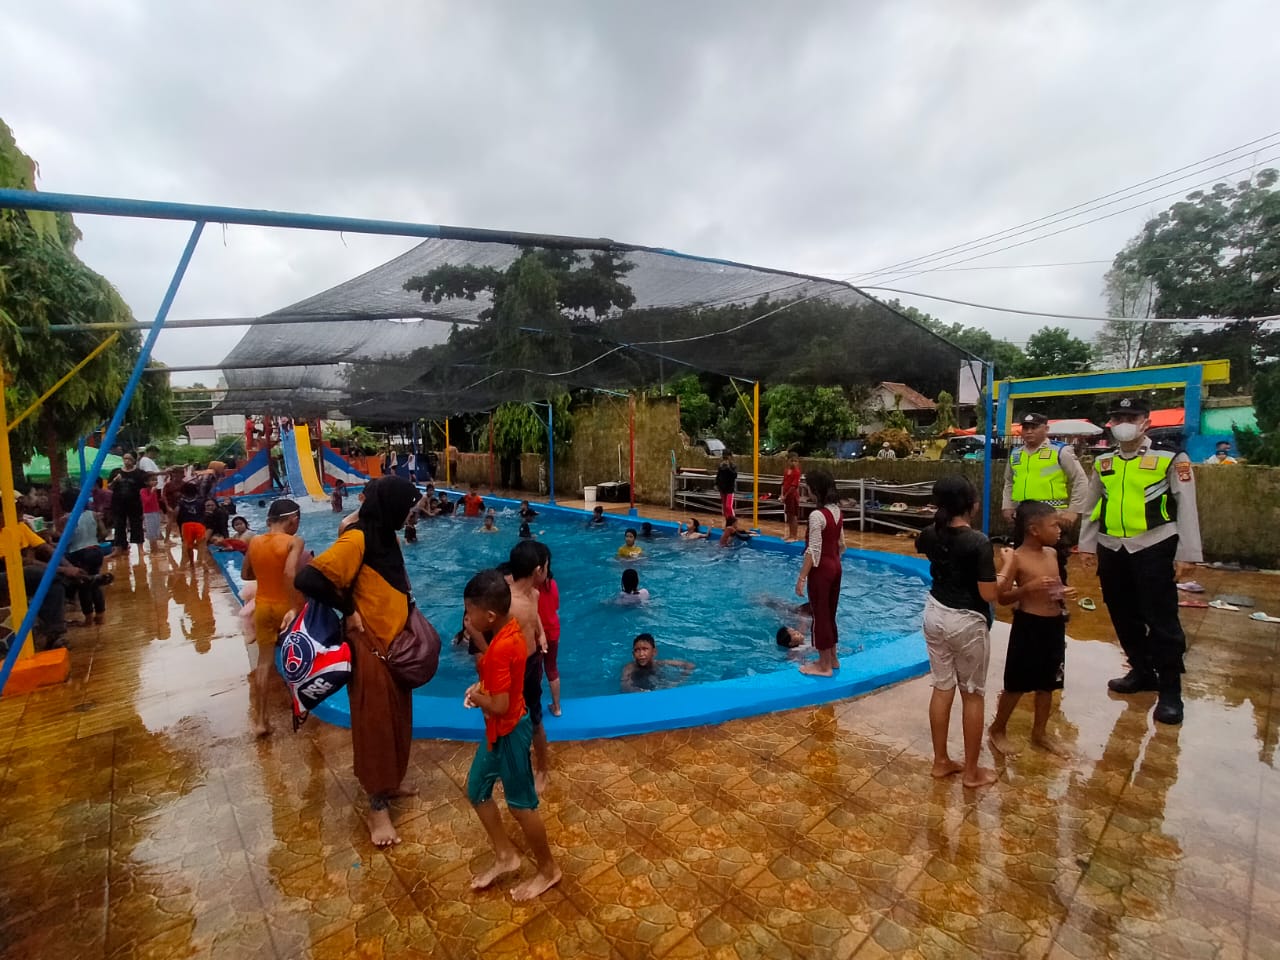 Libur Panjang, Tempat Wisata di Ogan Ilir Diserbu Pengunjung, Polsek Tanjung Raja Siagakan Personel